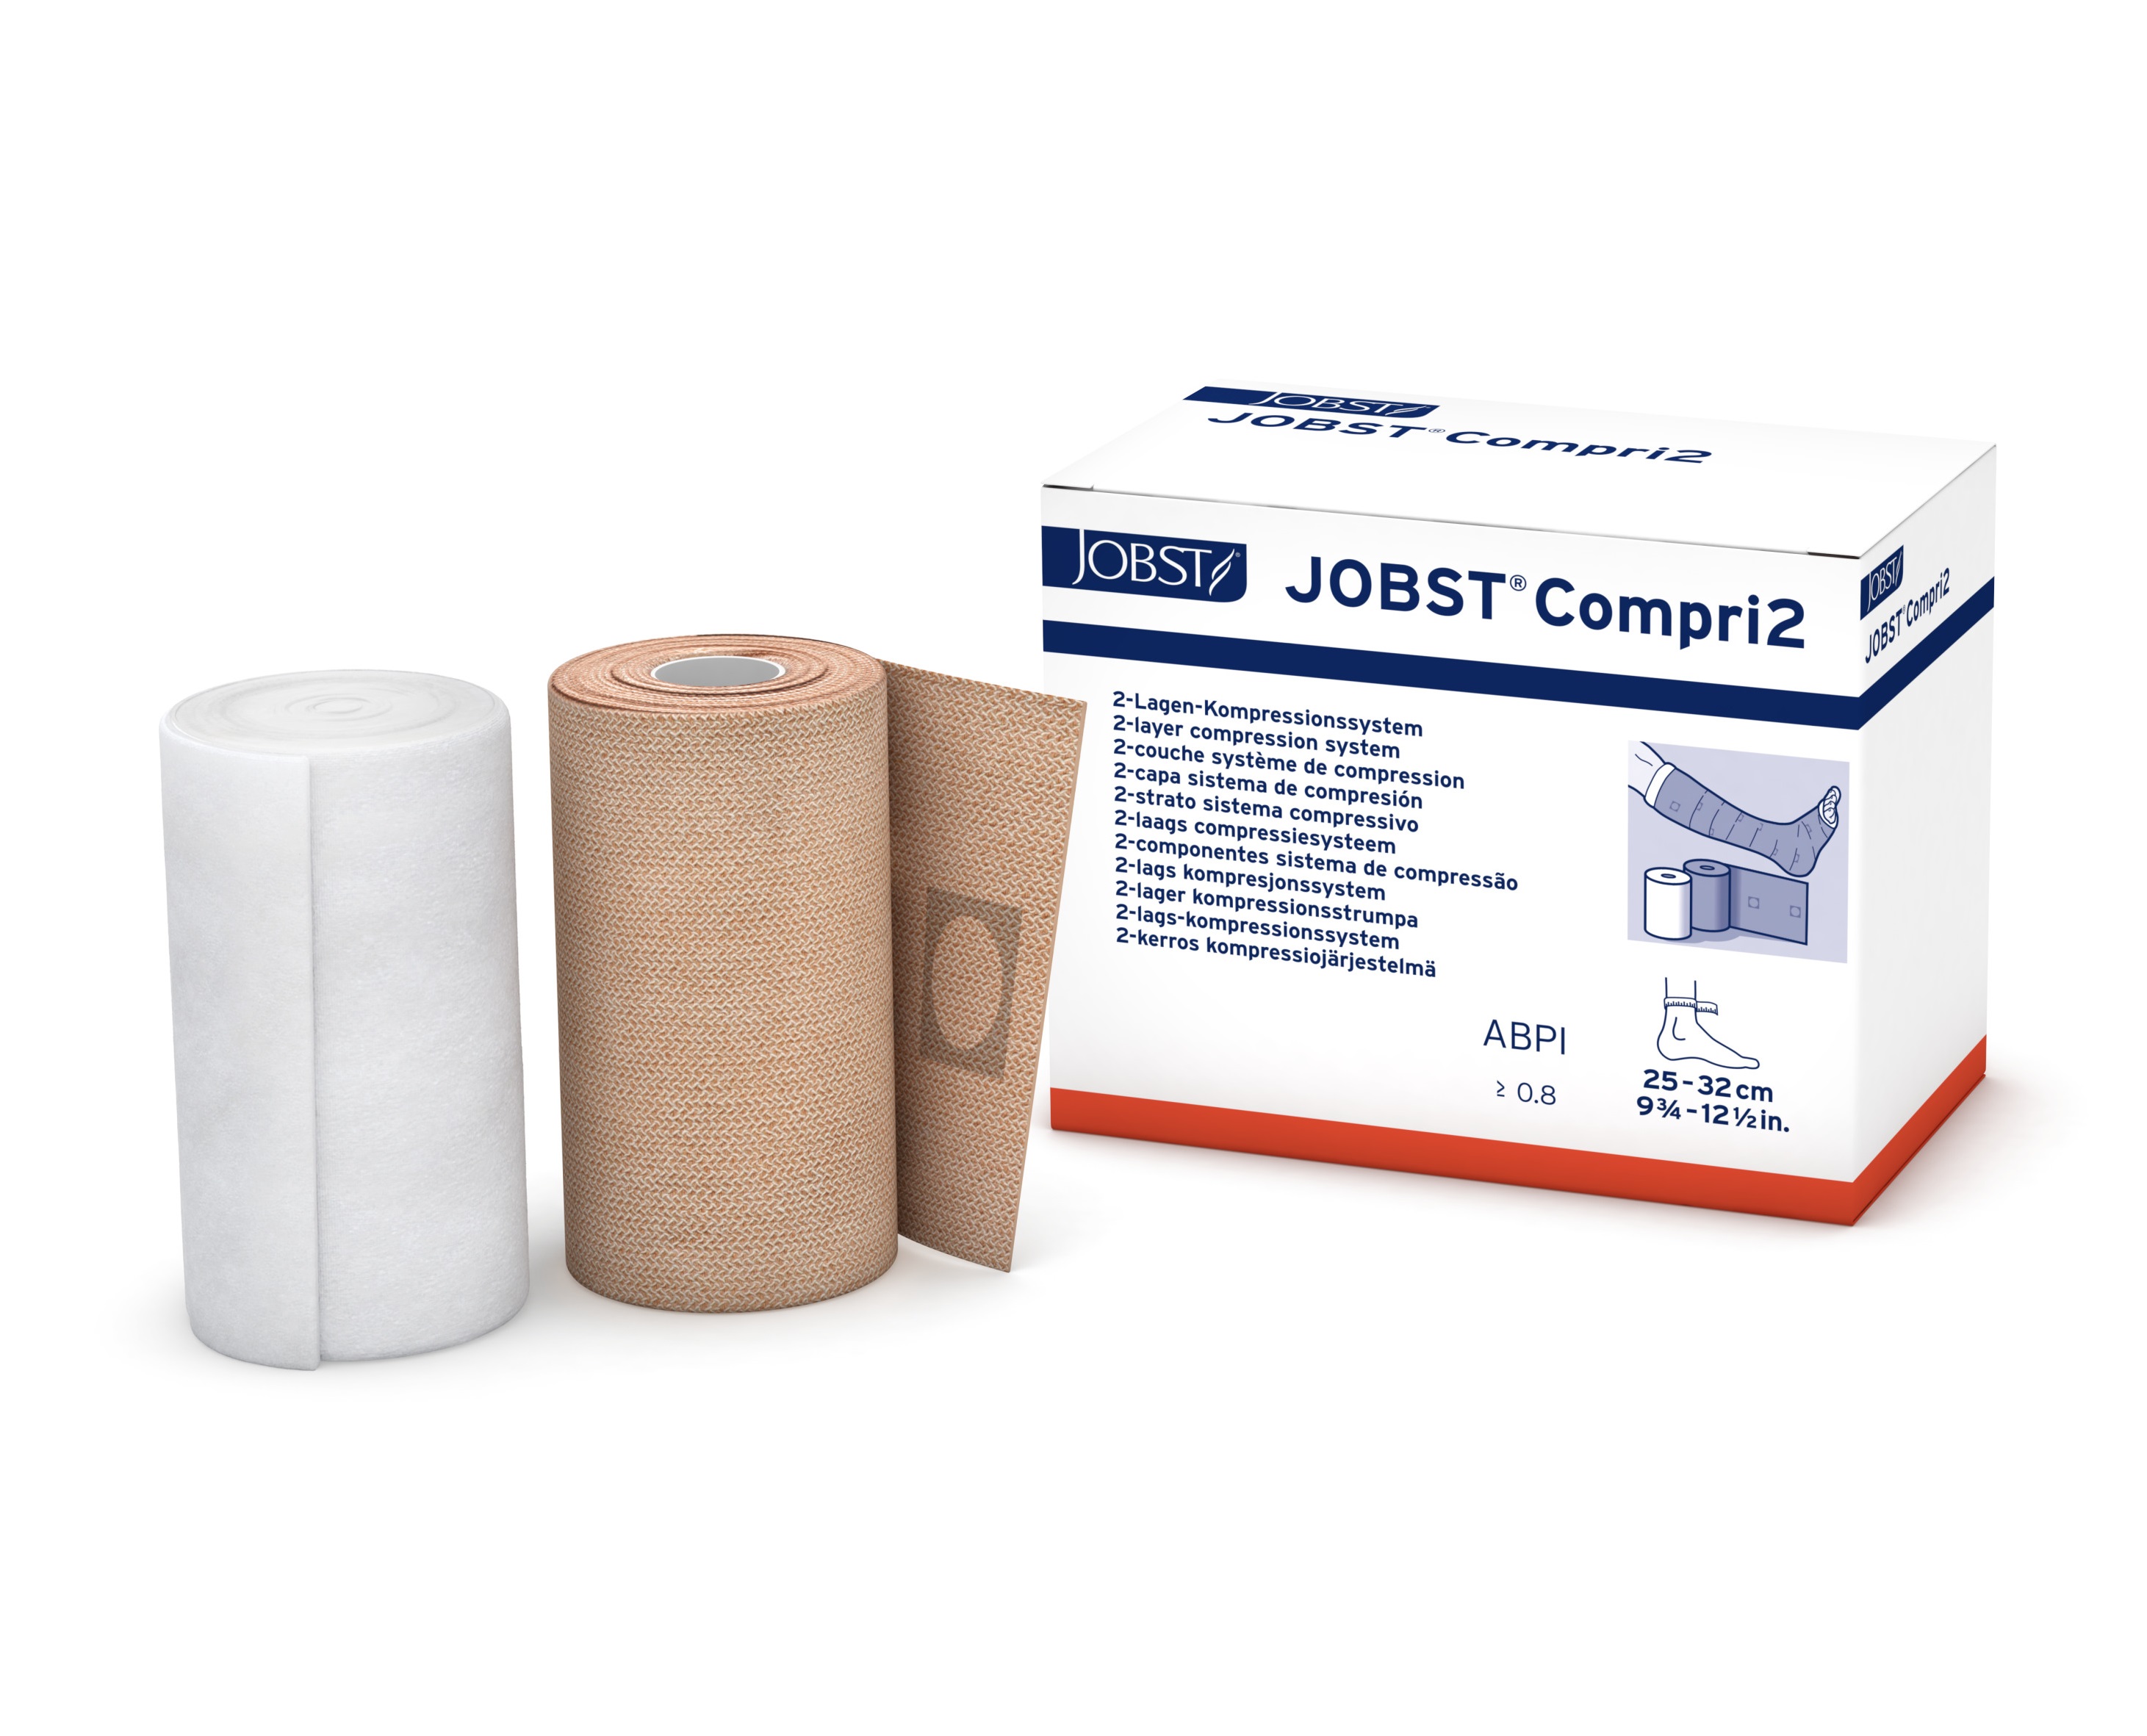 Jobst Compri2 Regular Compression (ABPI>0.8) 25-32cm - CTN of 5